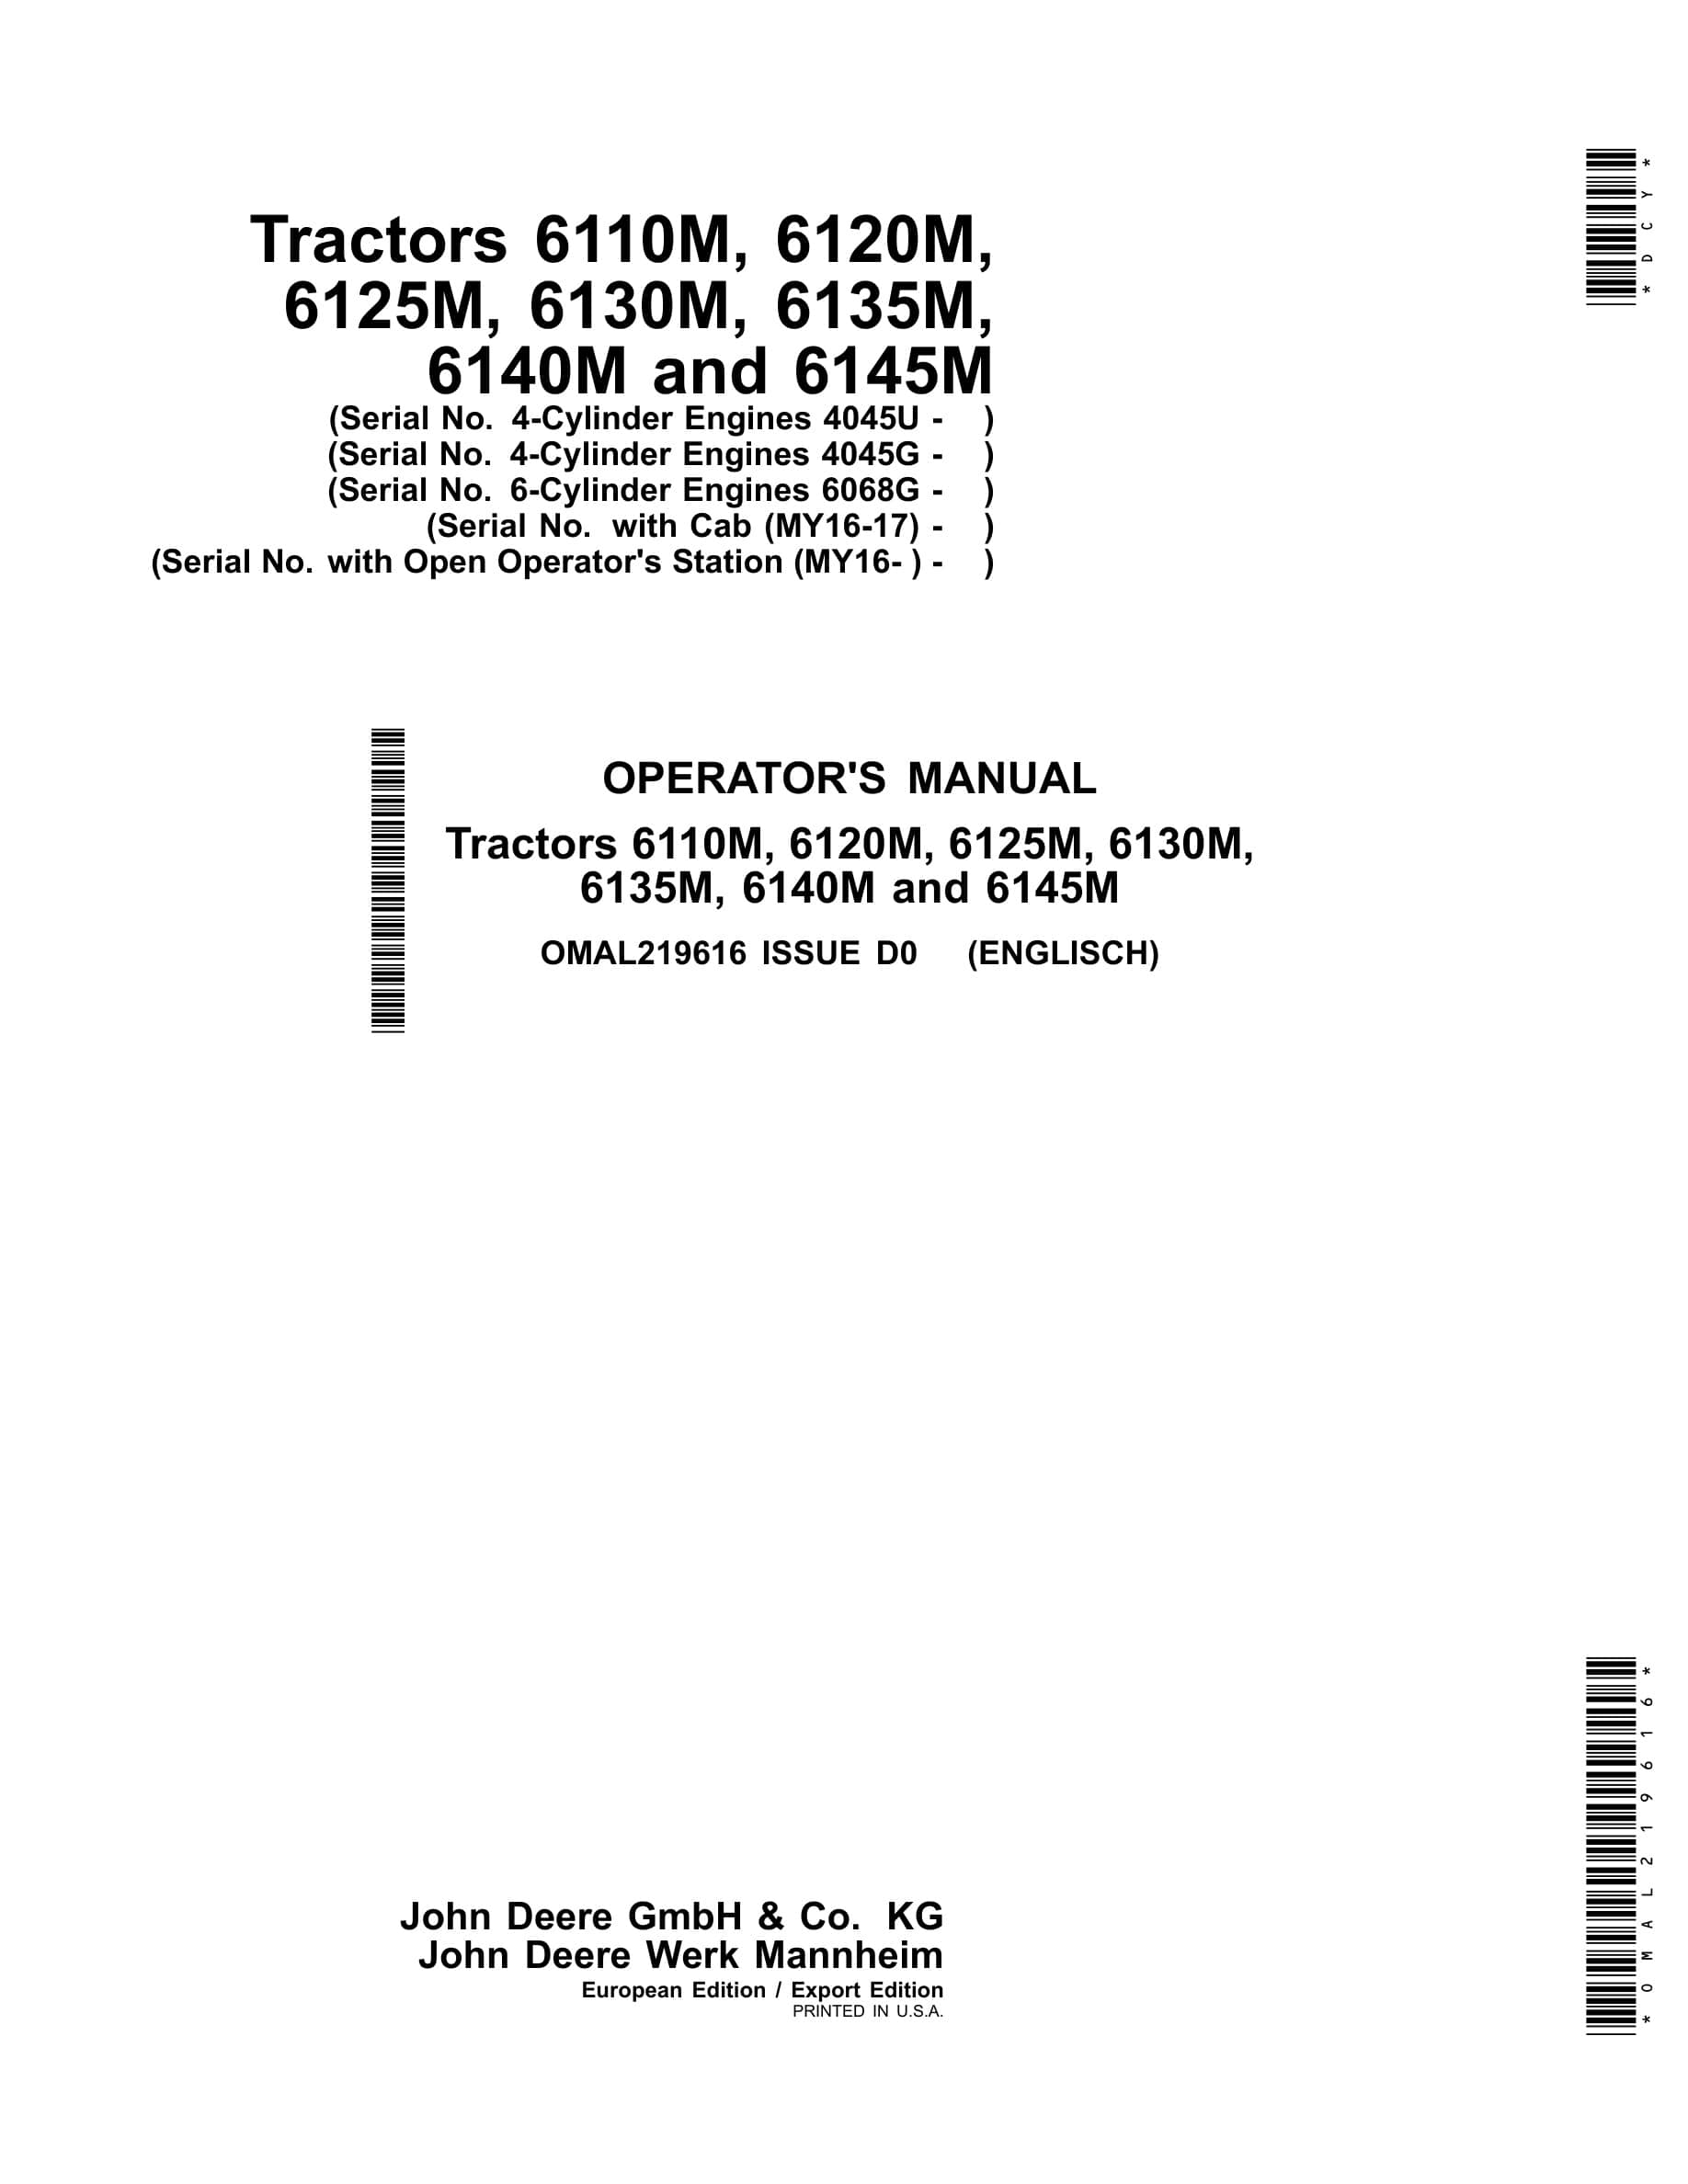 John Deere 6110m, 6120m, 6125m, 6130m 6135m, 6140m And 6145m Tractors Operator Manuals OMAL219616-1